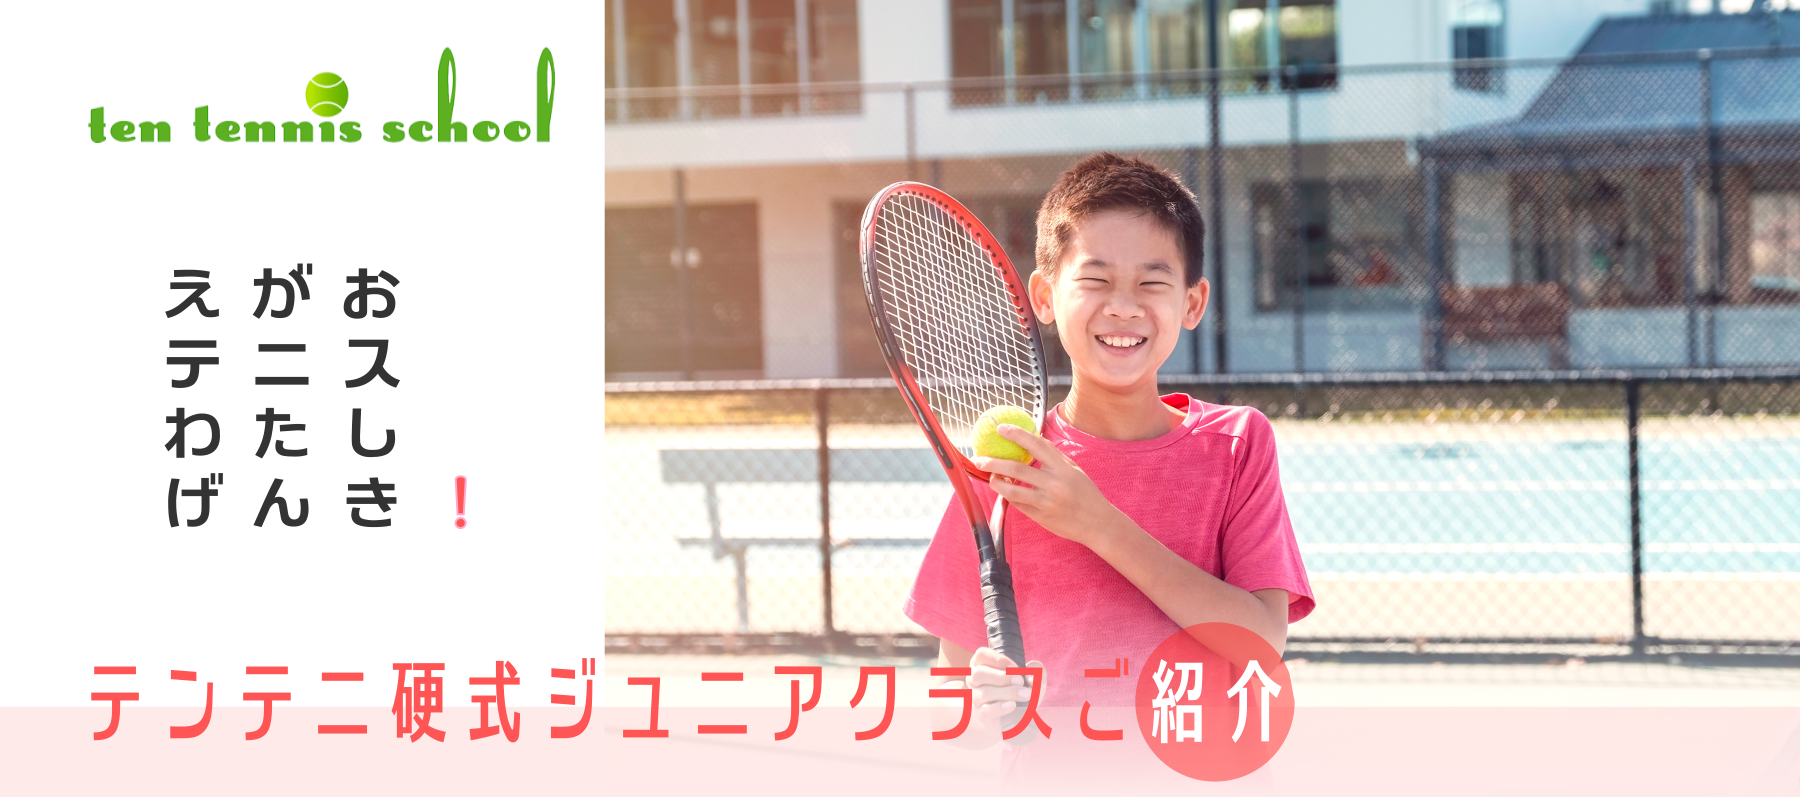 愛知高浜のテンテニススクール、硬式ジュニアクラス表、受講料